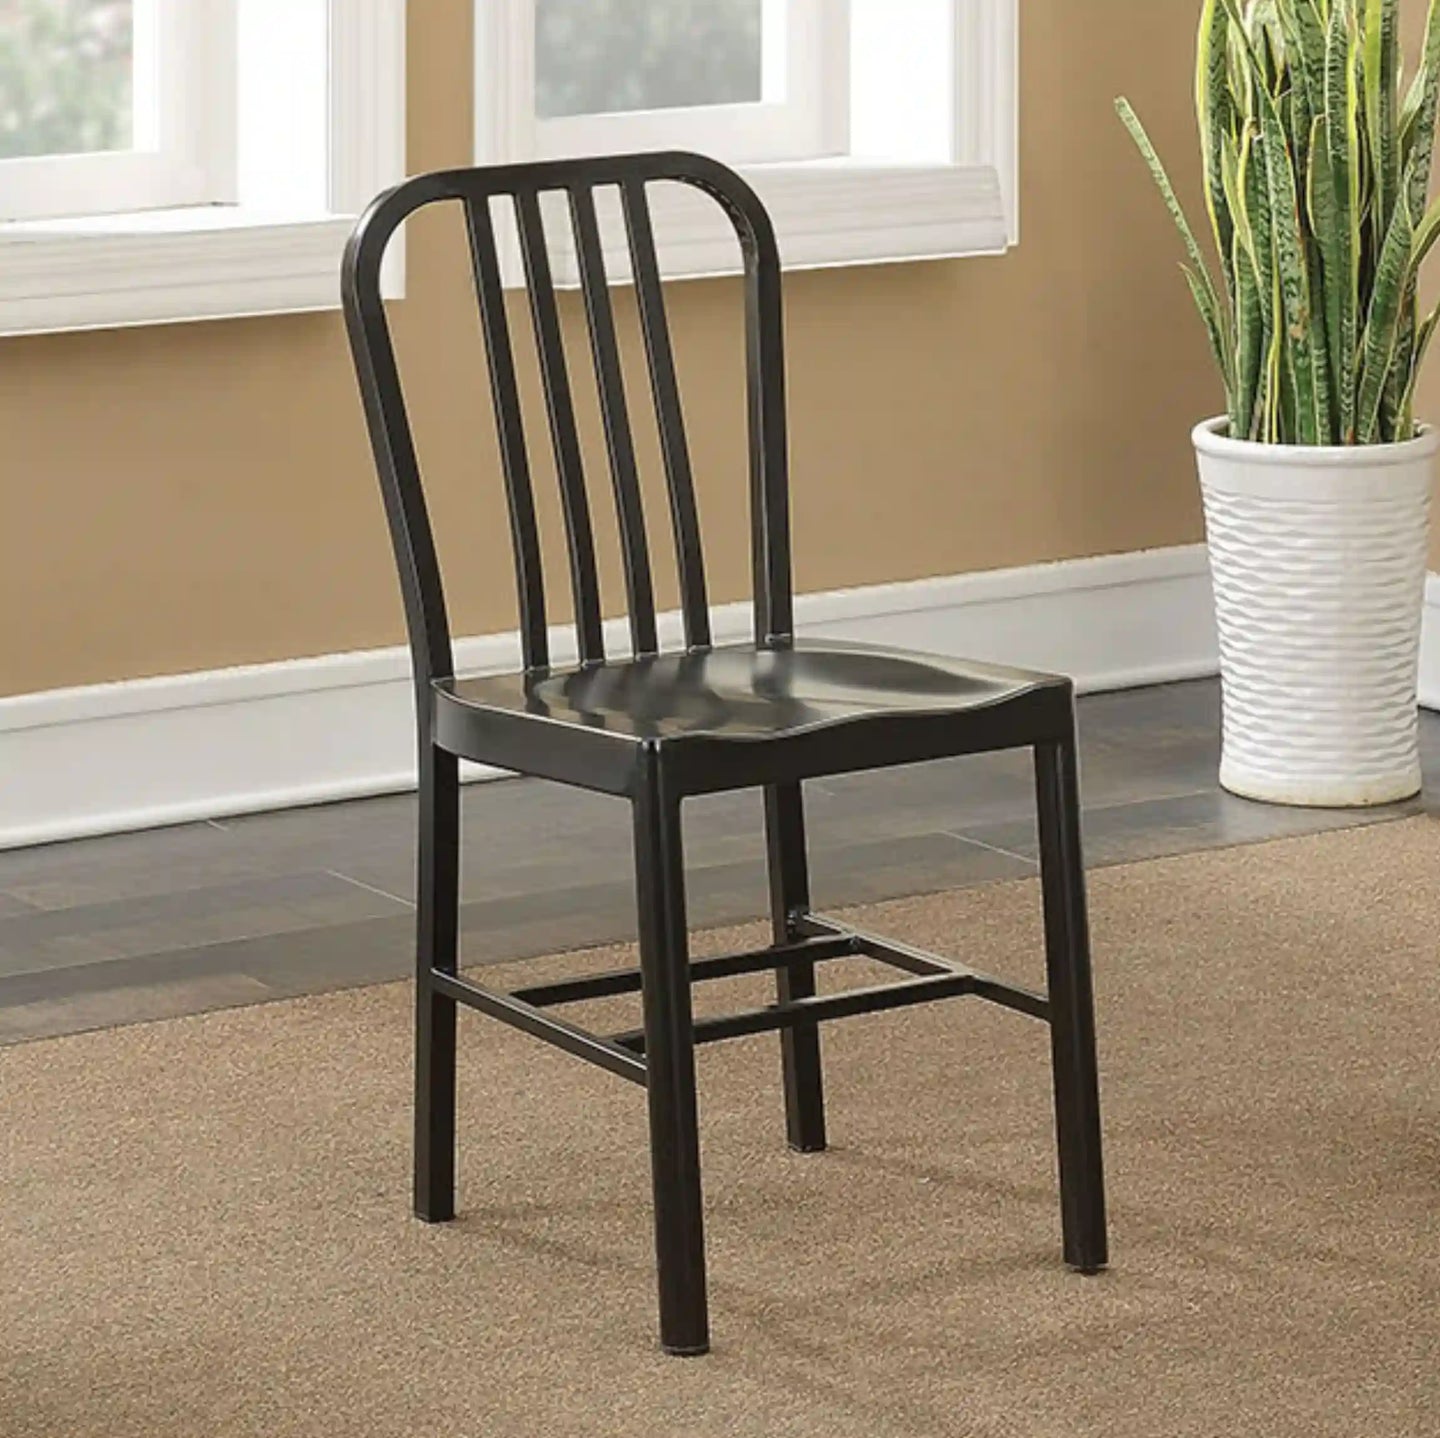 Furniture of America Waterloo Industrial Steel Slat Back Side Chairs in Black (Set of 2) - IDF-3509BK-SC